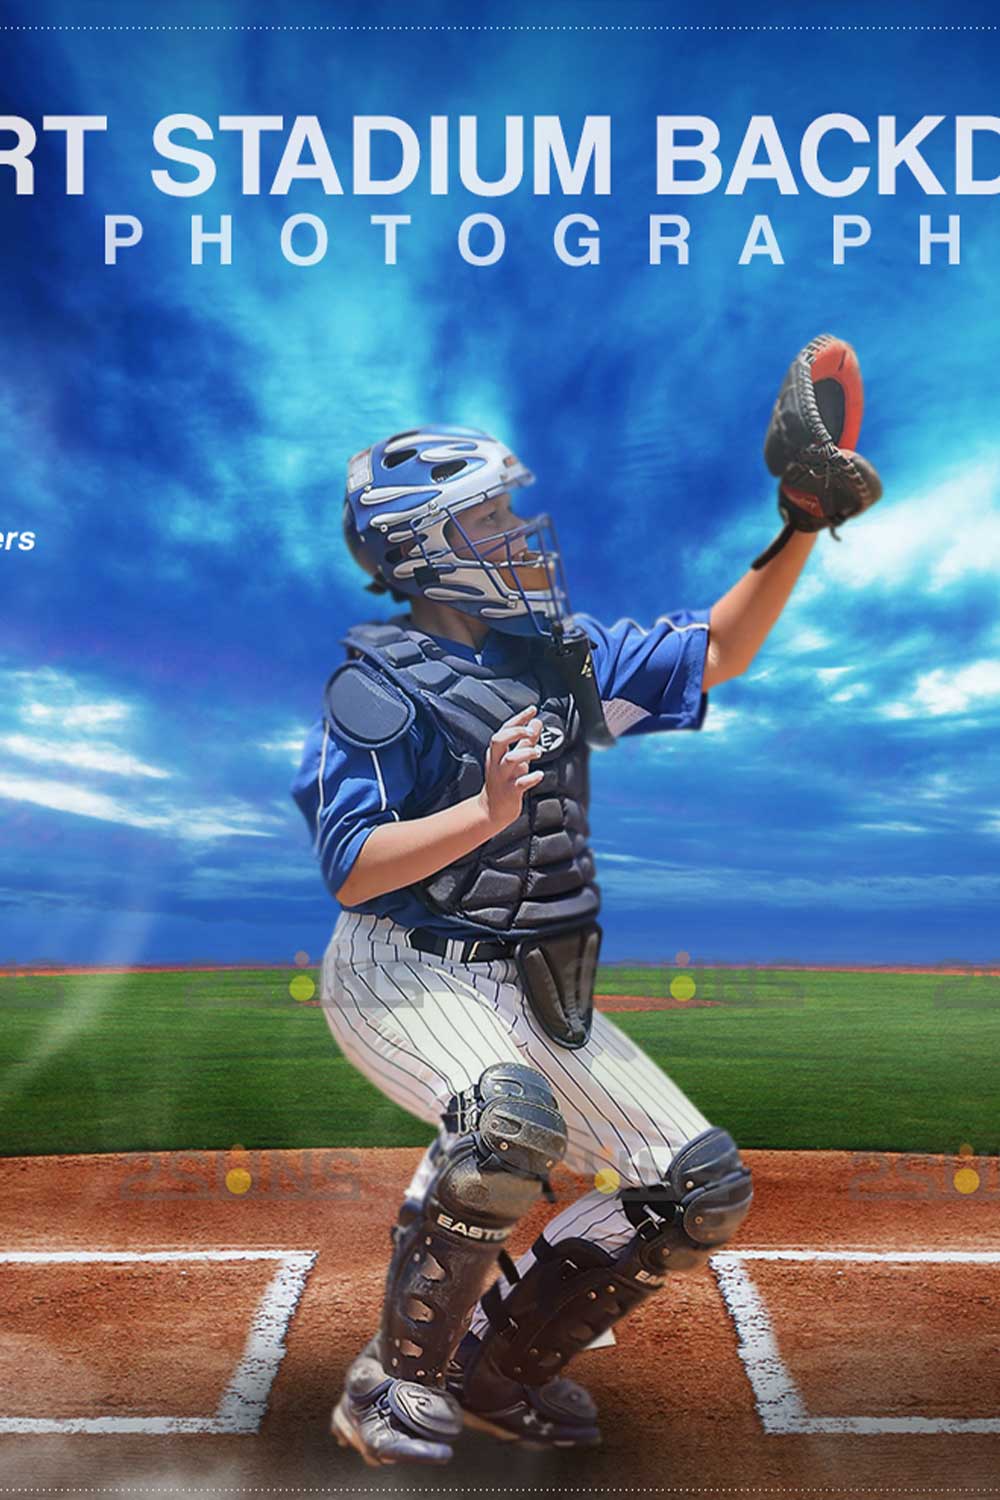 Baseball Amazing Backdrop Sports Digital Background Pinterest Image.